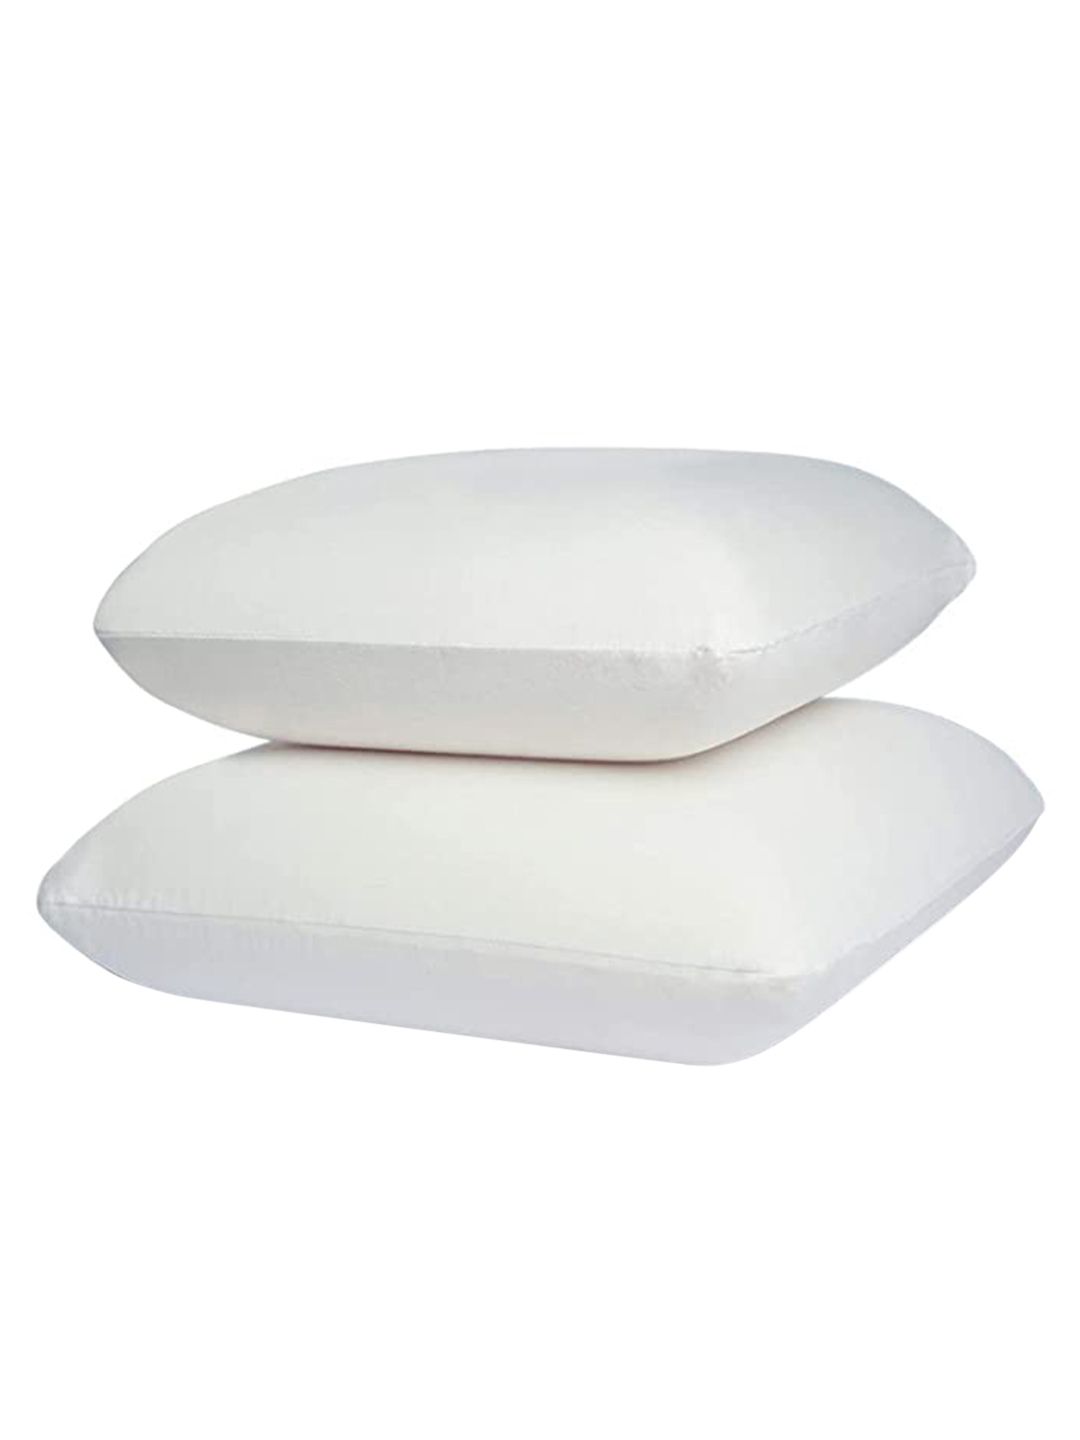 Sleepsia Set of 4 White Pillows Price in India